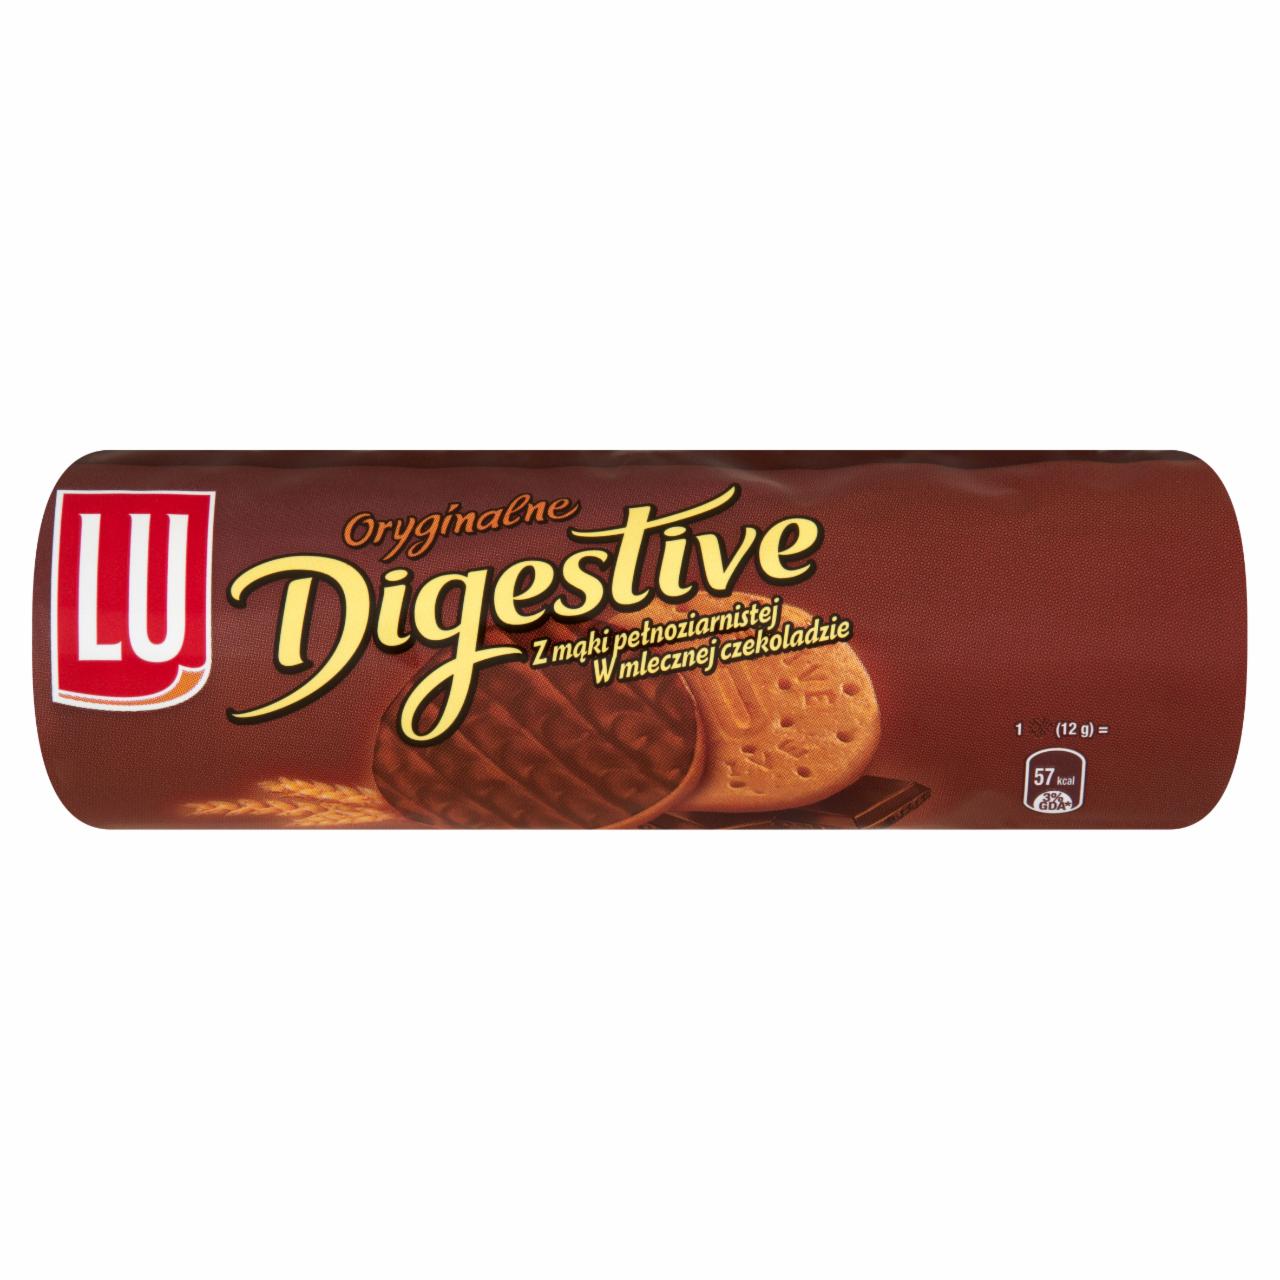 Zdjęcia - LU Oryginalne Digestive Herbatniki z mąką pełnoziarnistą w mlecznej czekoladzie 250 g